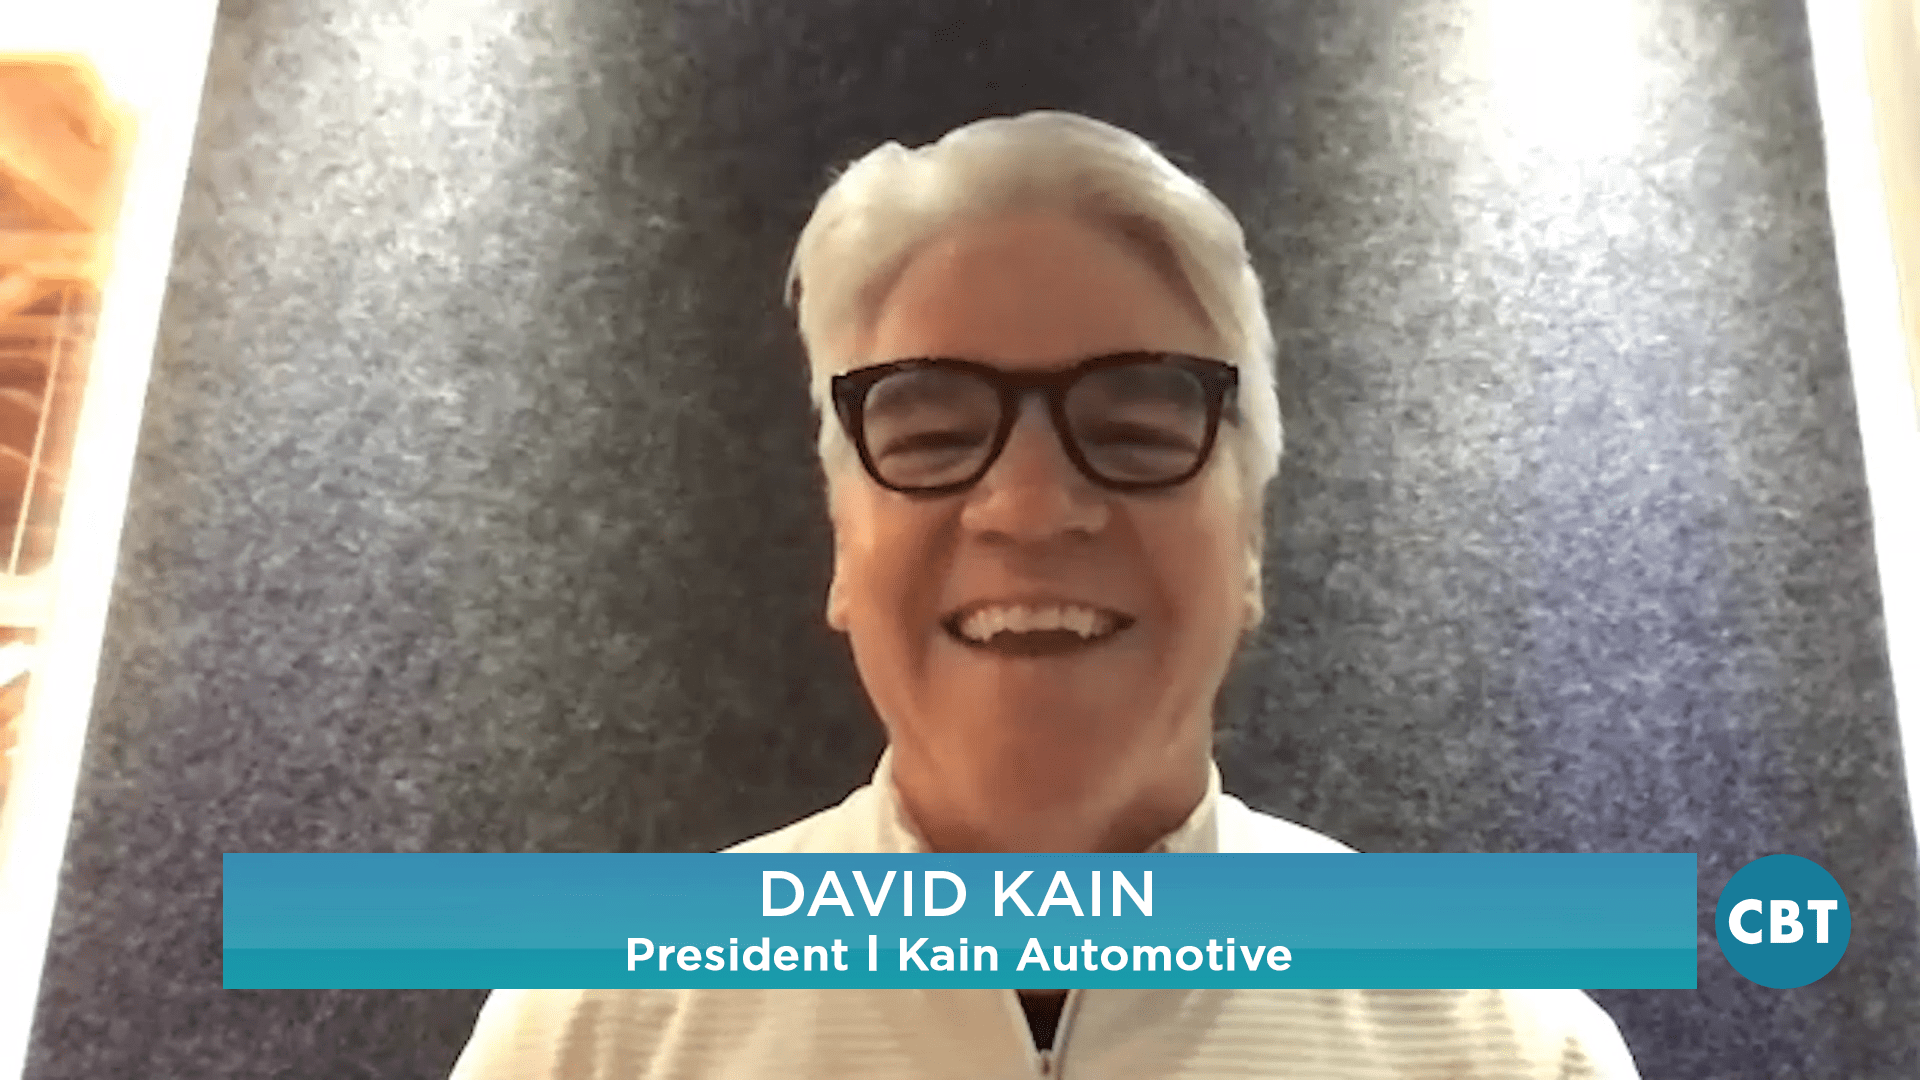 David Kain